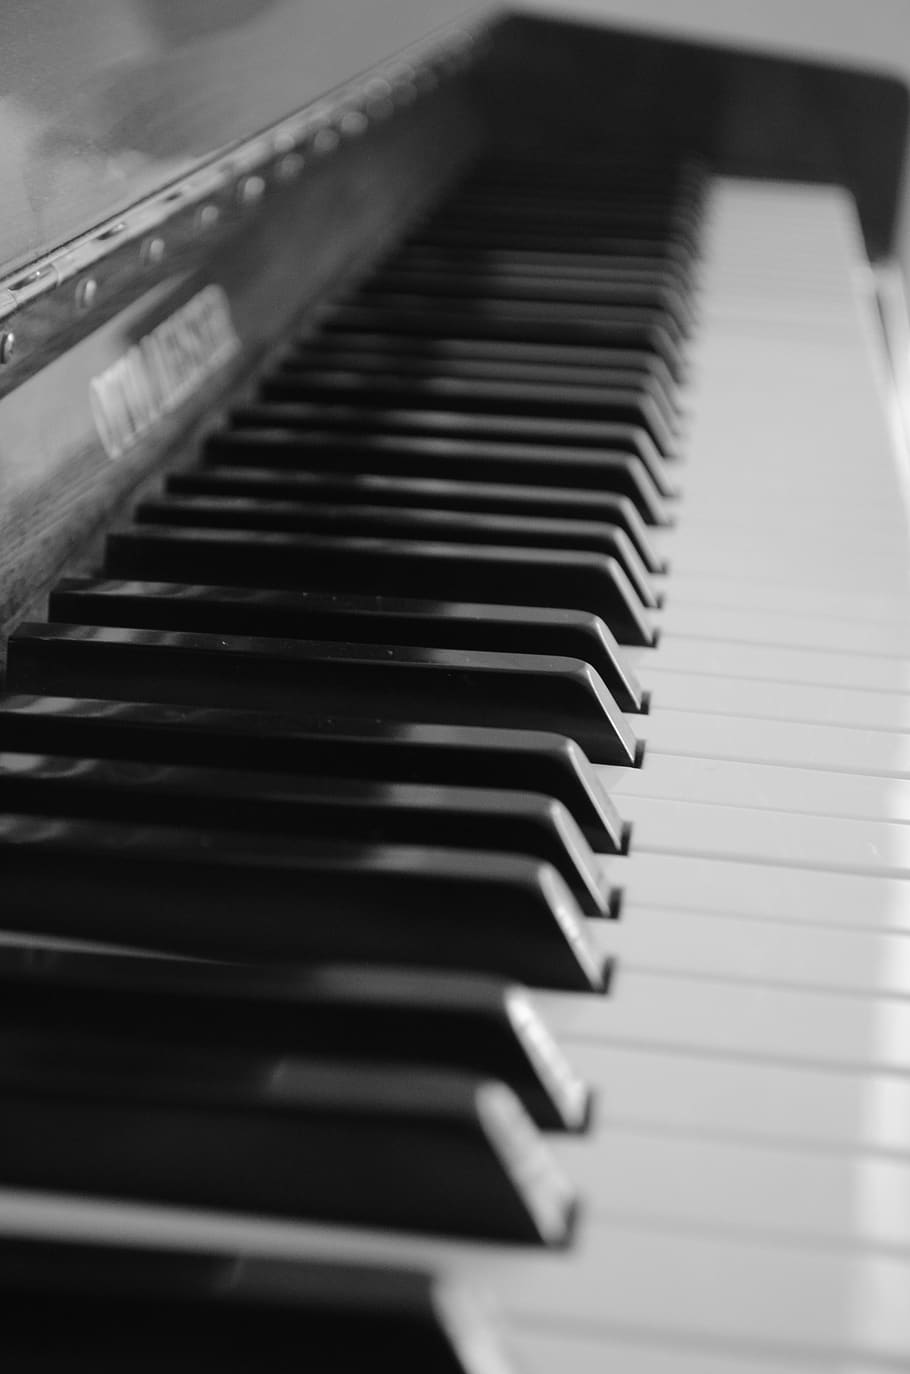 piano, teclado de piano, partituras, instrumento de teclado, notenblatt, teclas de piano, asa, som, concerto, chaves